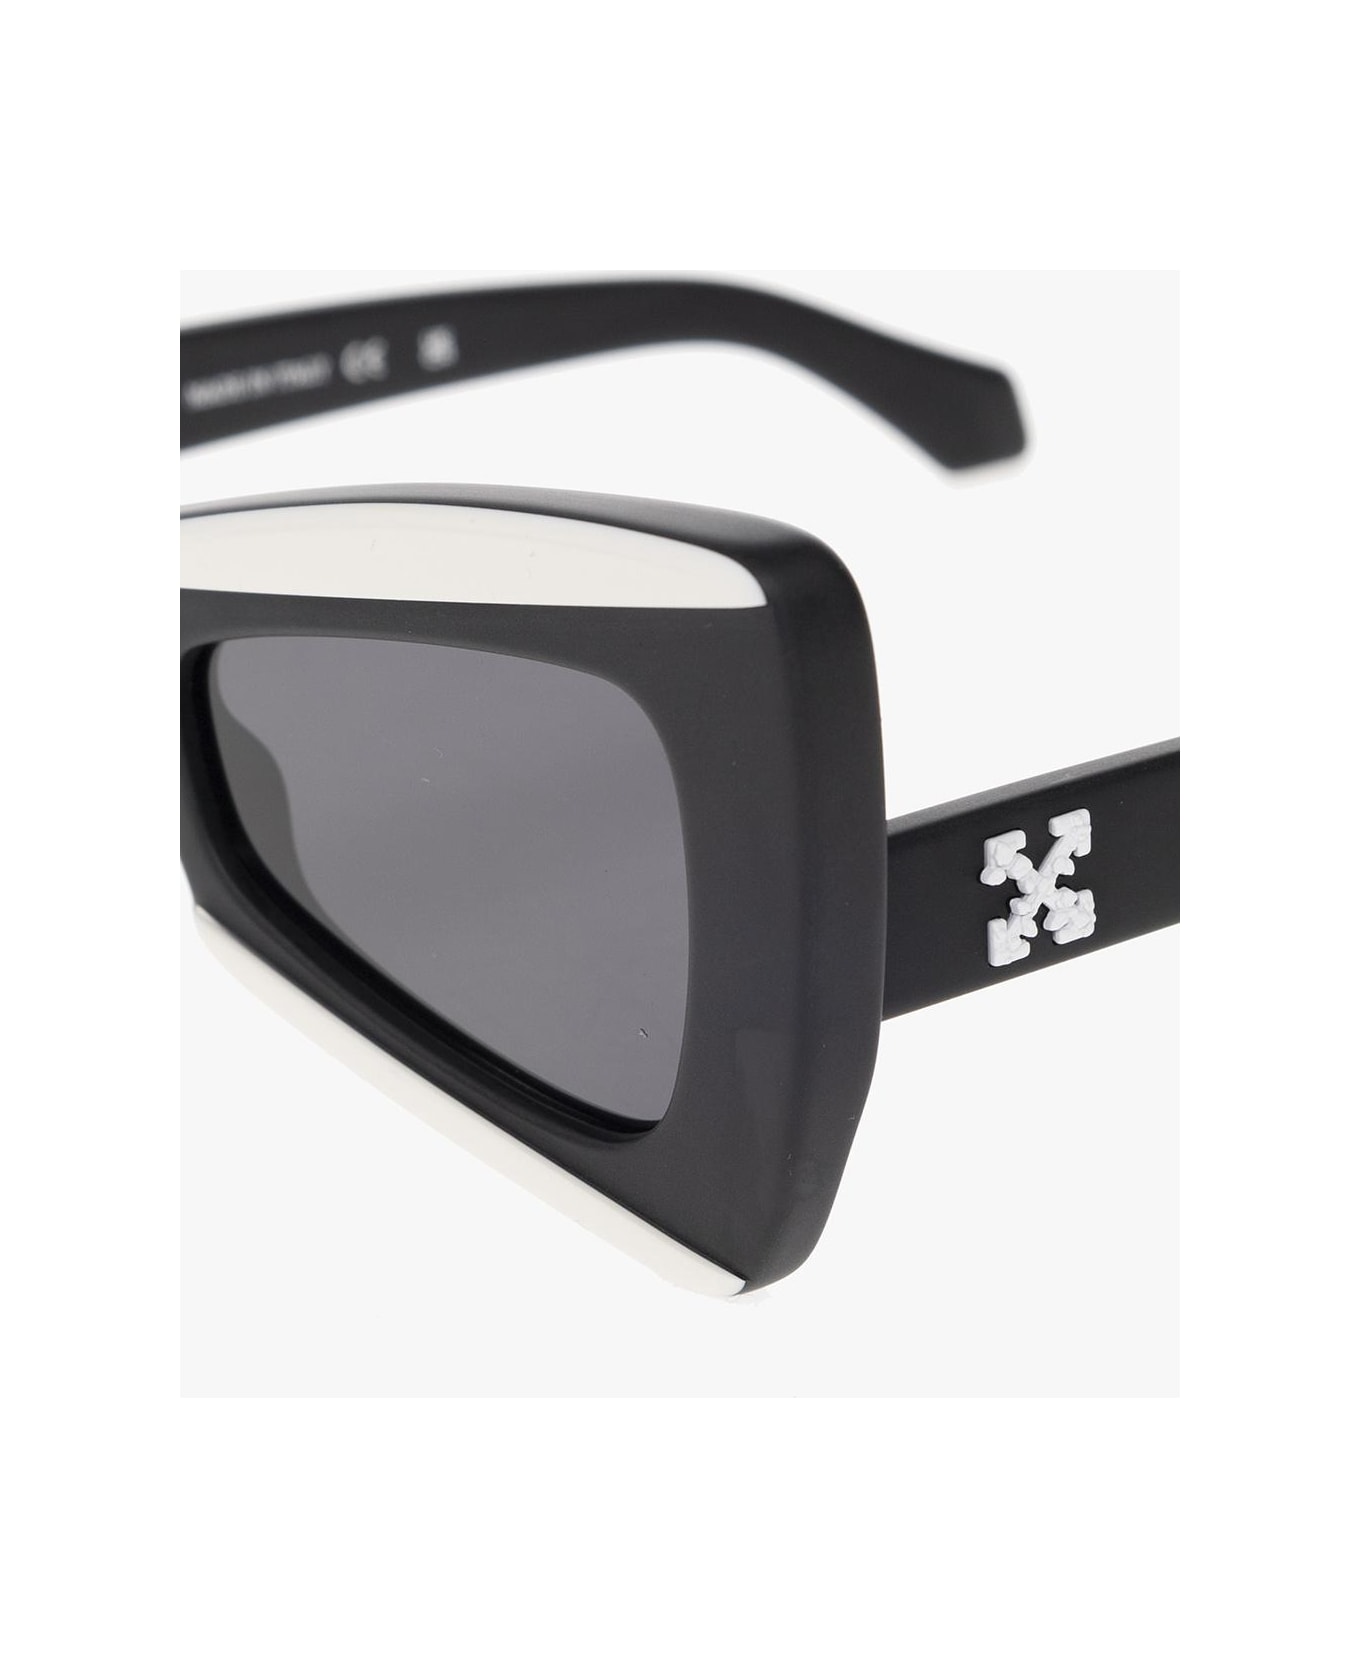 Off-White 'nashville' Sunglasses - Black/dark grey